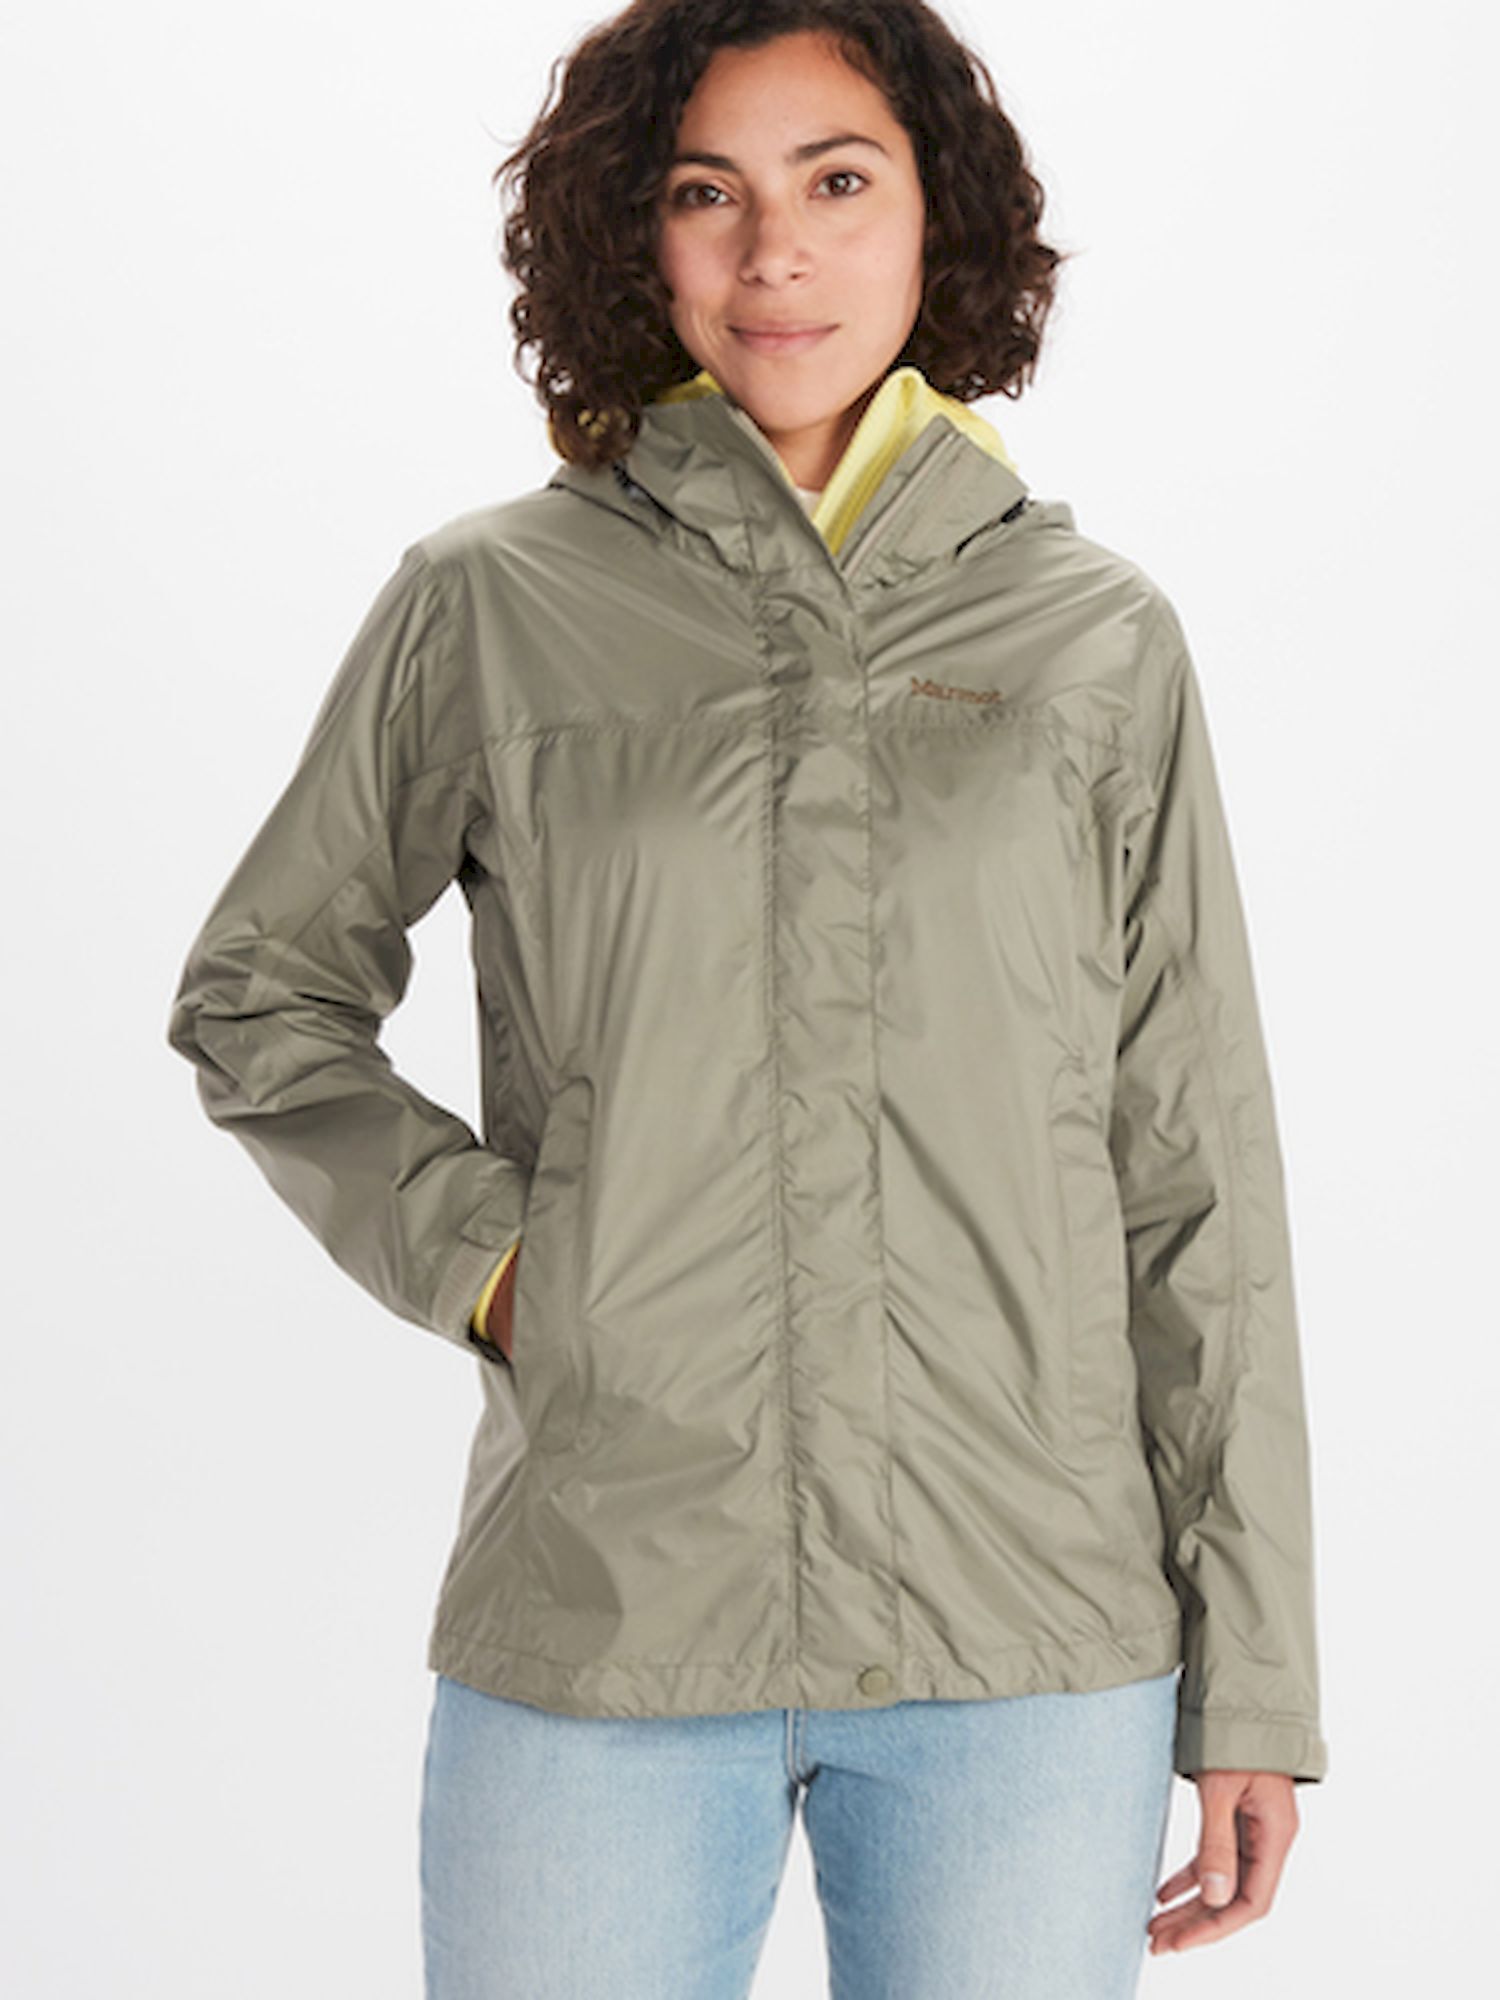 Marmot PreCip Eco Jacket - Hardshell jacket - Women's